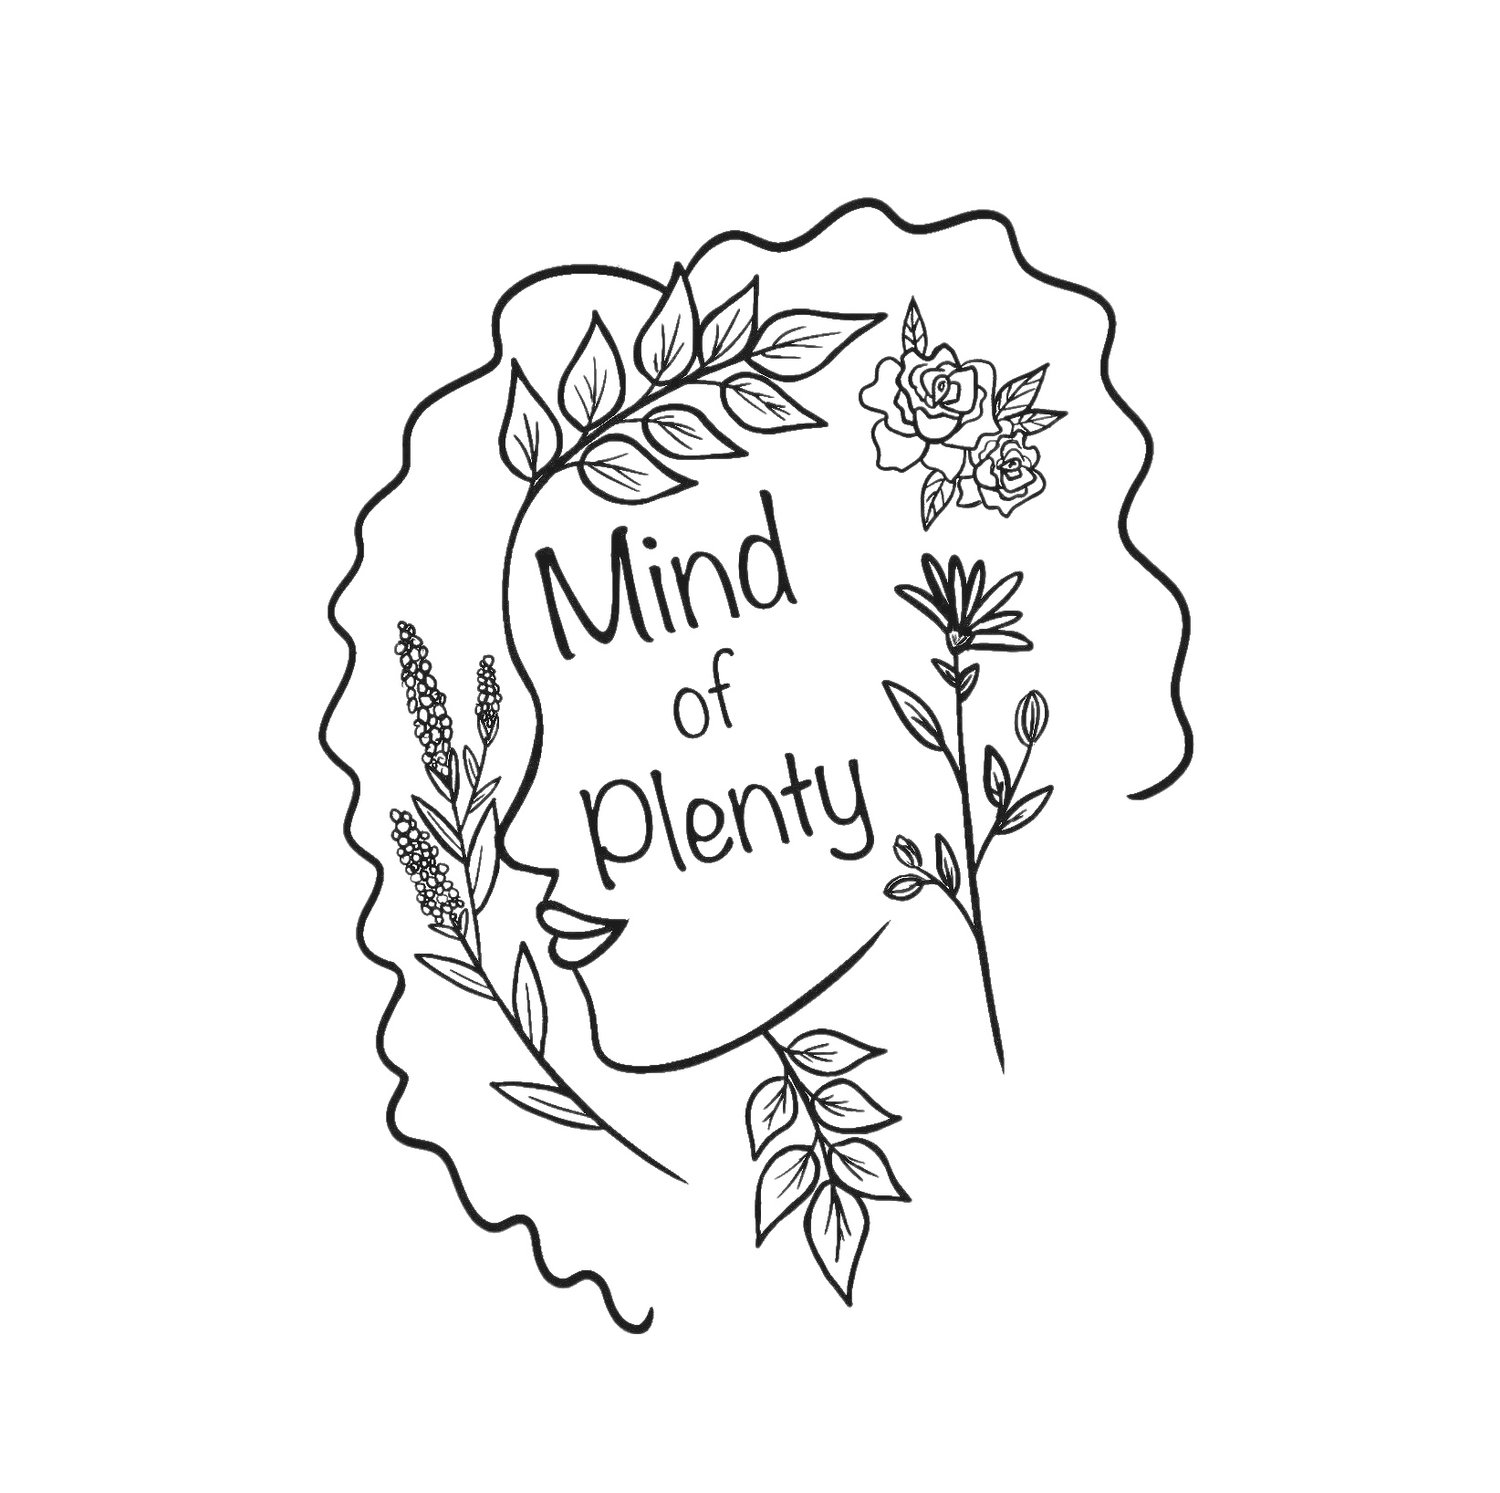 Mind of Plenty